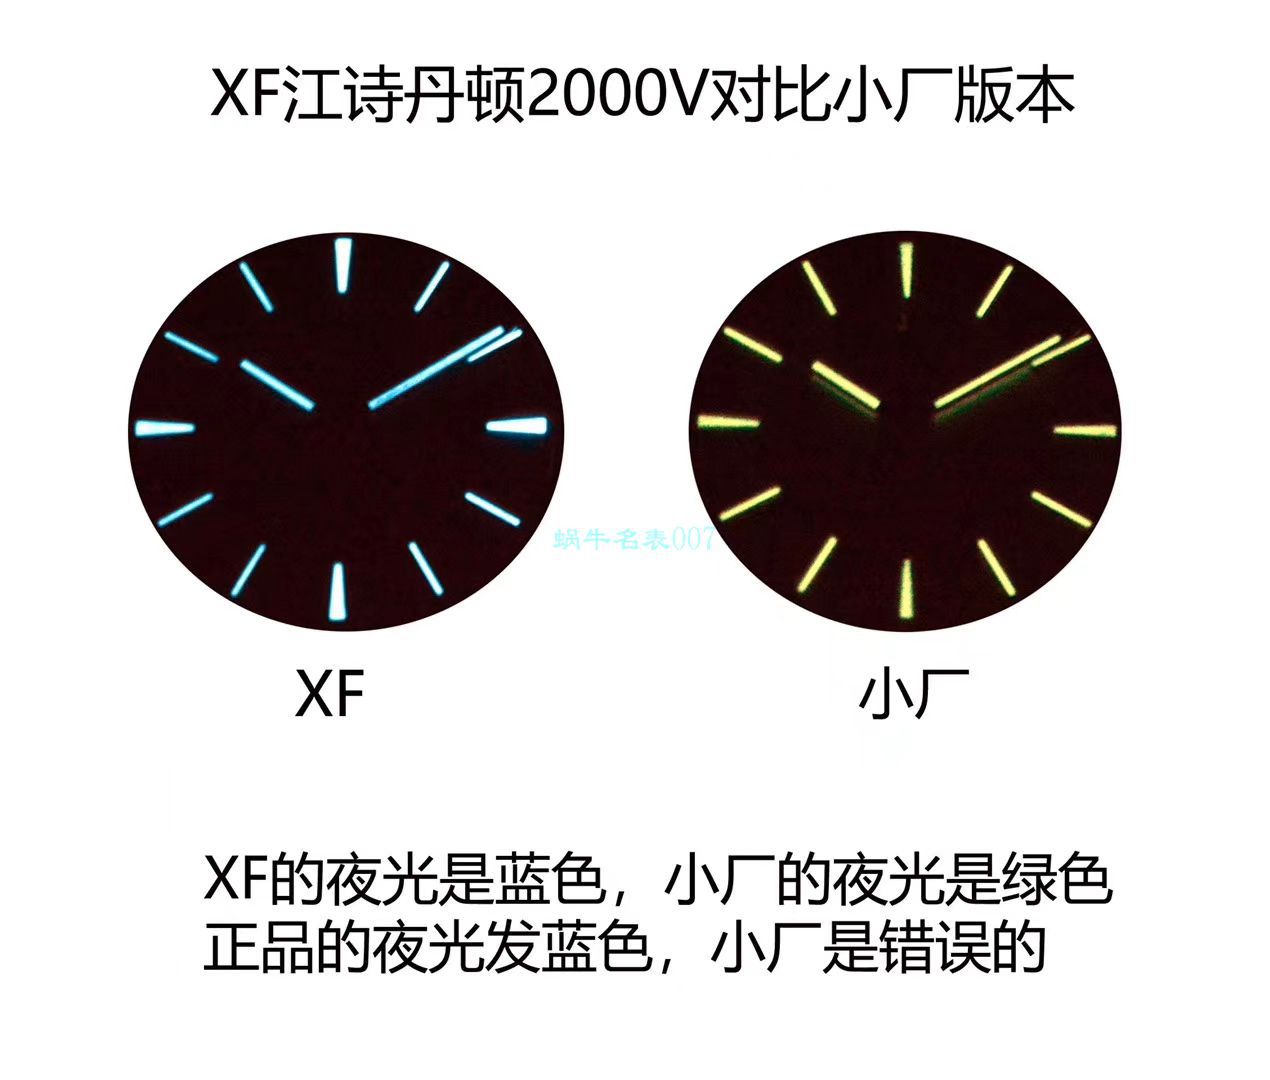 XF年中巨作超A精仿手表江诗丹顿纵横四海系列2000V/120G-B122腕表 / JJ223